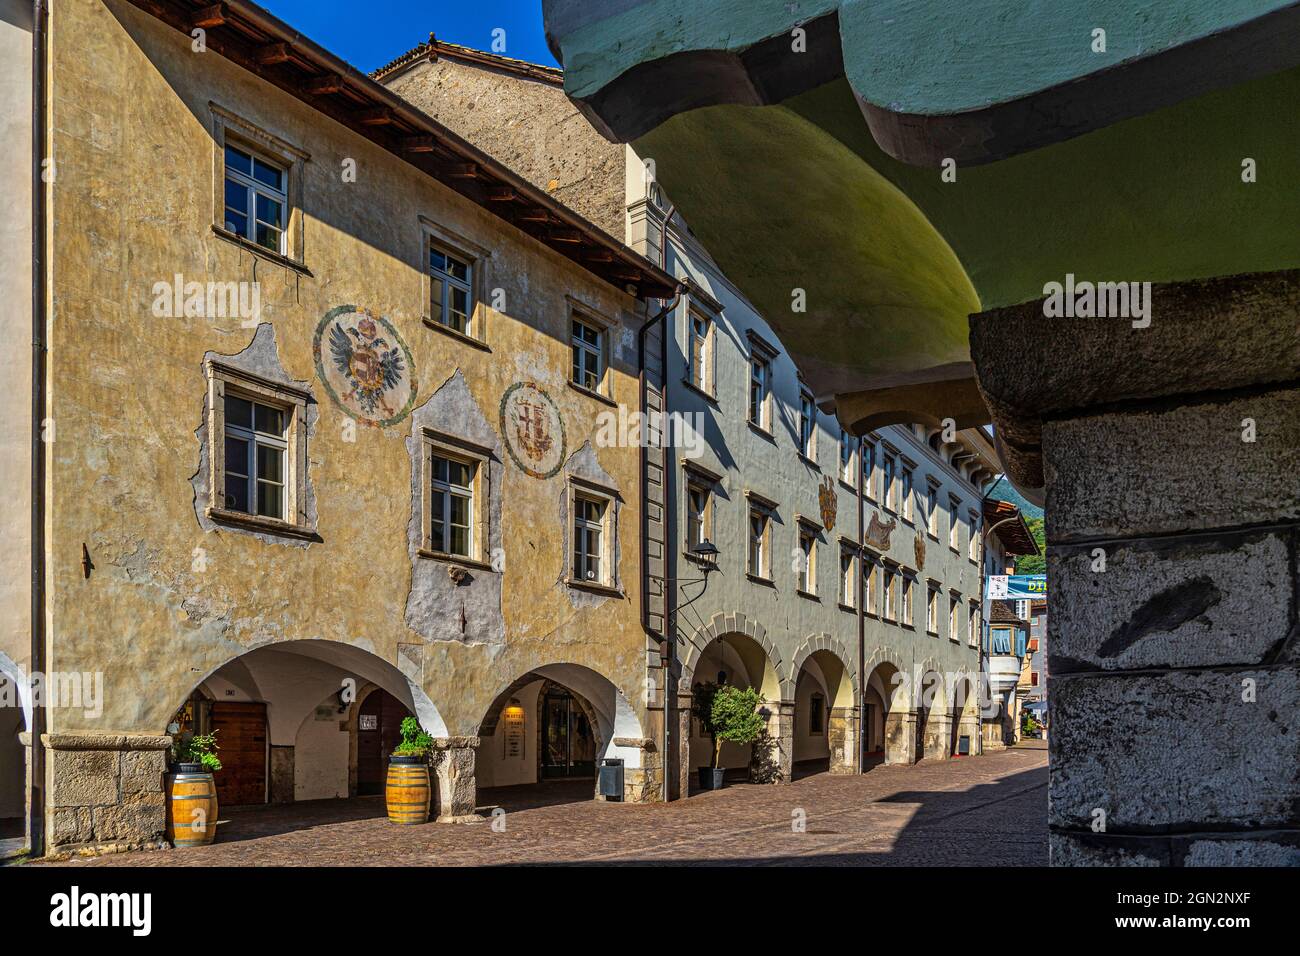 Charakteristische Häuser des antiken mittelalterlichen Zentrums von Neumarkt. Die abgesenkten Arkaden und die farbigen Fassaden sind charakteristisch für dieses Dorf. Stockfoto